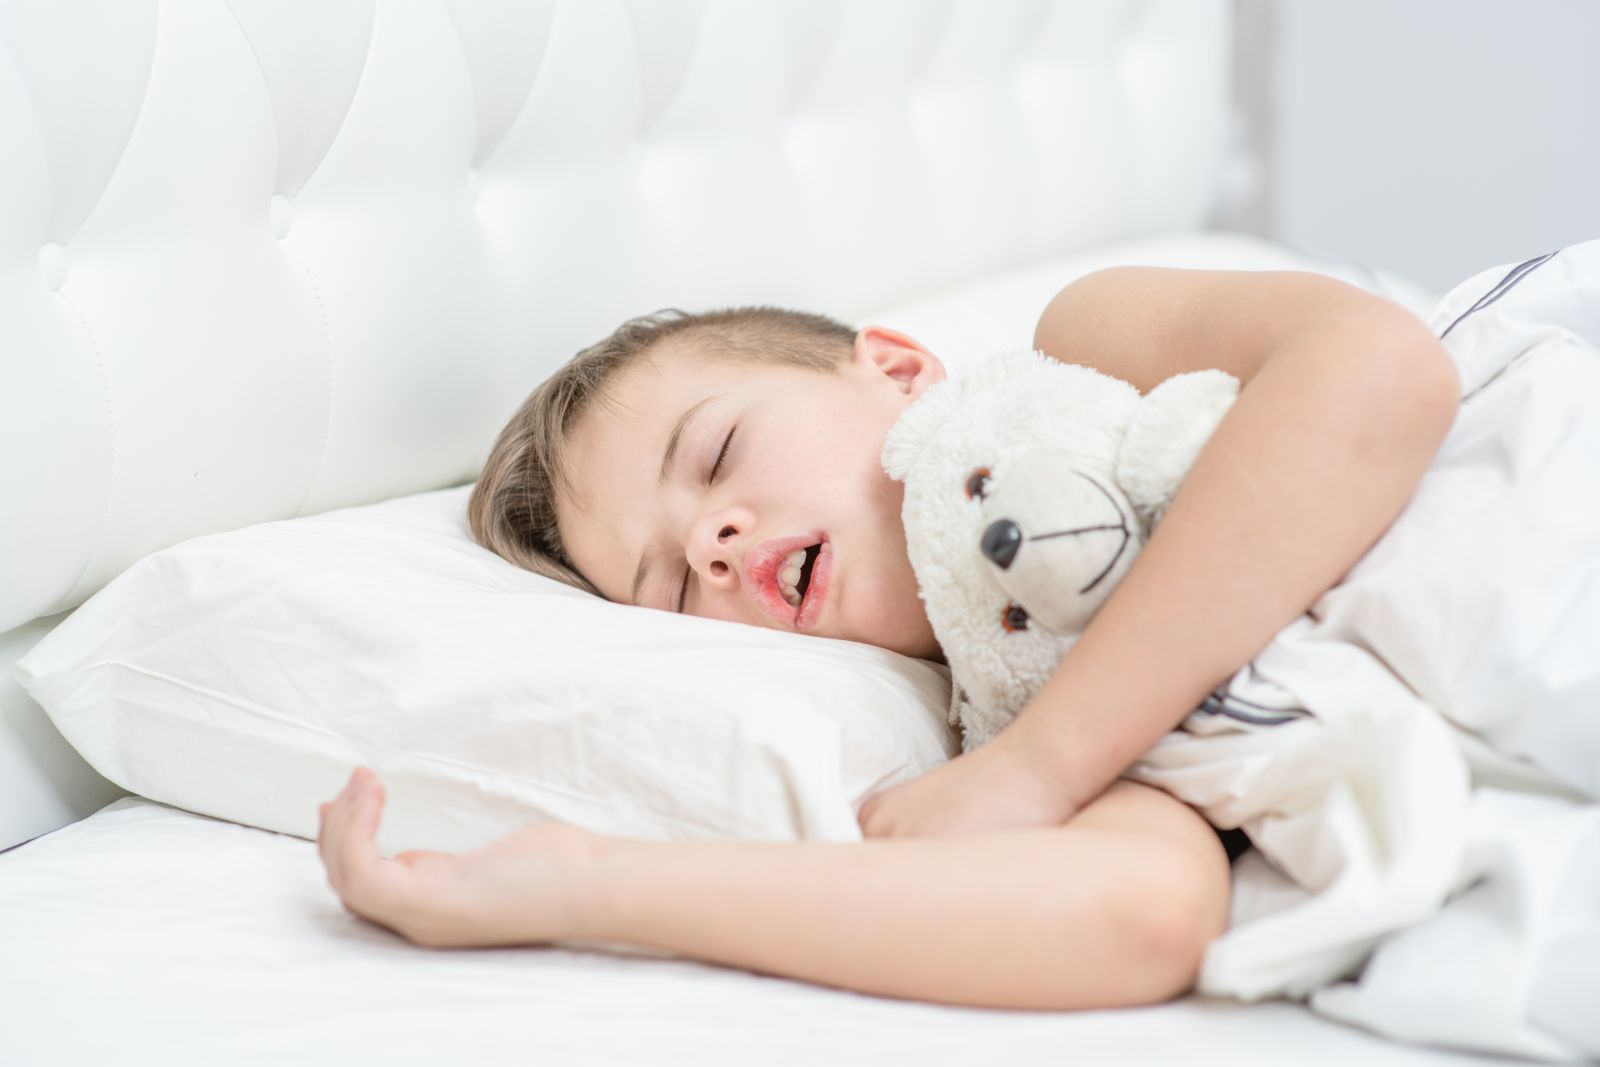 TMJ and Sleep Apnea